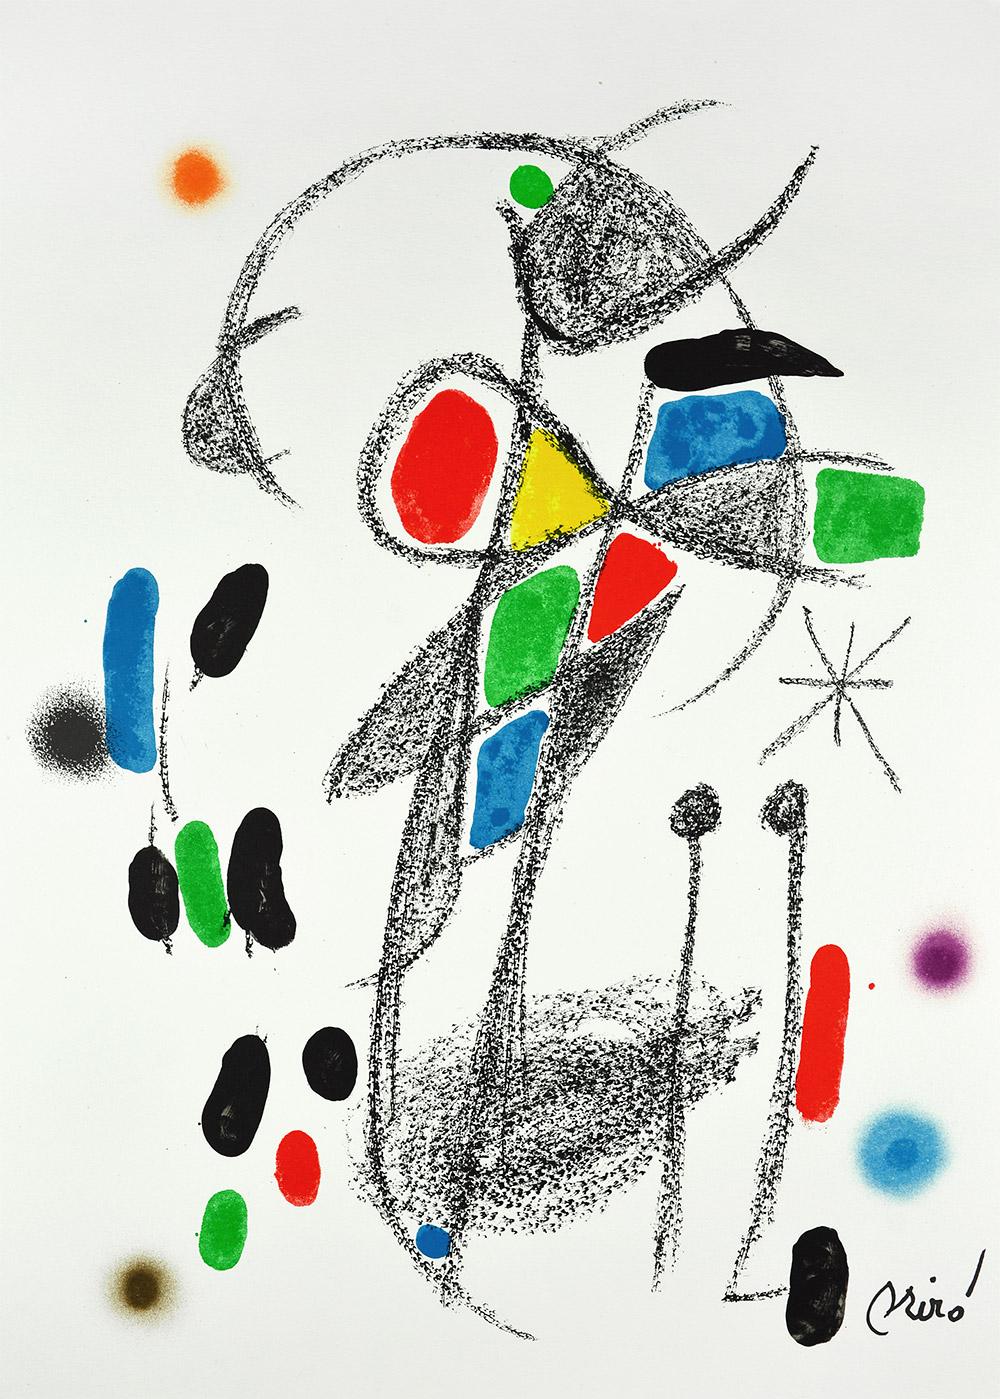 Joan Miró - Maravillas con variaciones acrósticas en el jardín de Miró XVIII
Date of creation: 1975
Medium: Lithograph on Gvarro paper
Edition: 1500
Size: 49,5 x 35,5 cm
Observations: Lithograph on Gvarro paper plate signed. Edited by Polígrafa,